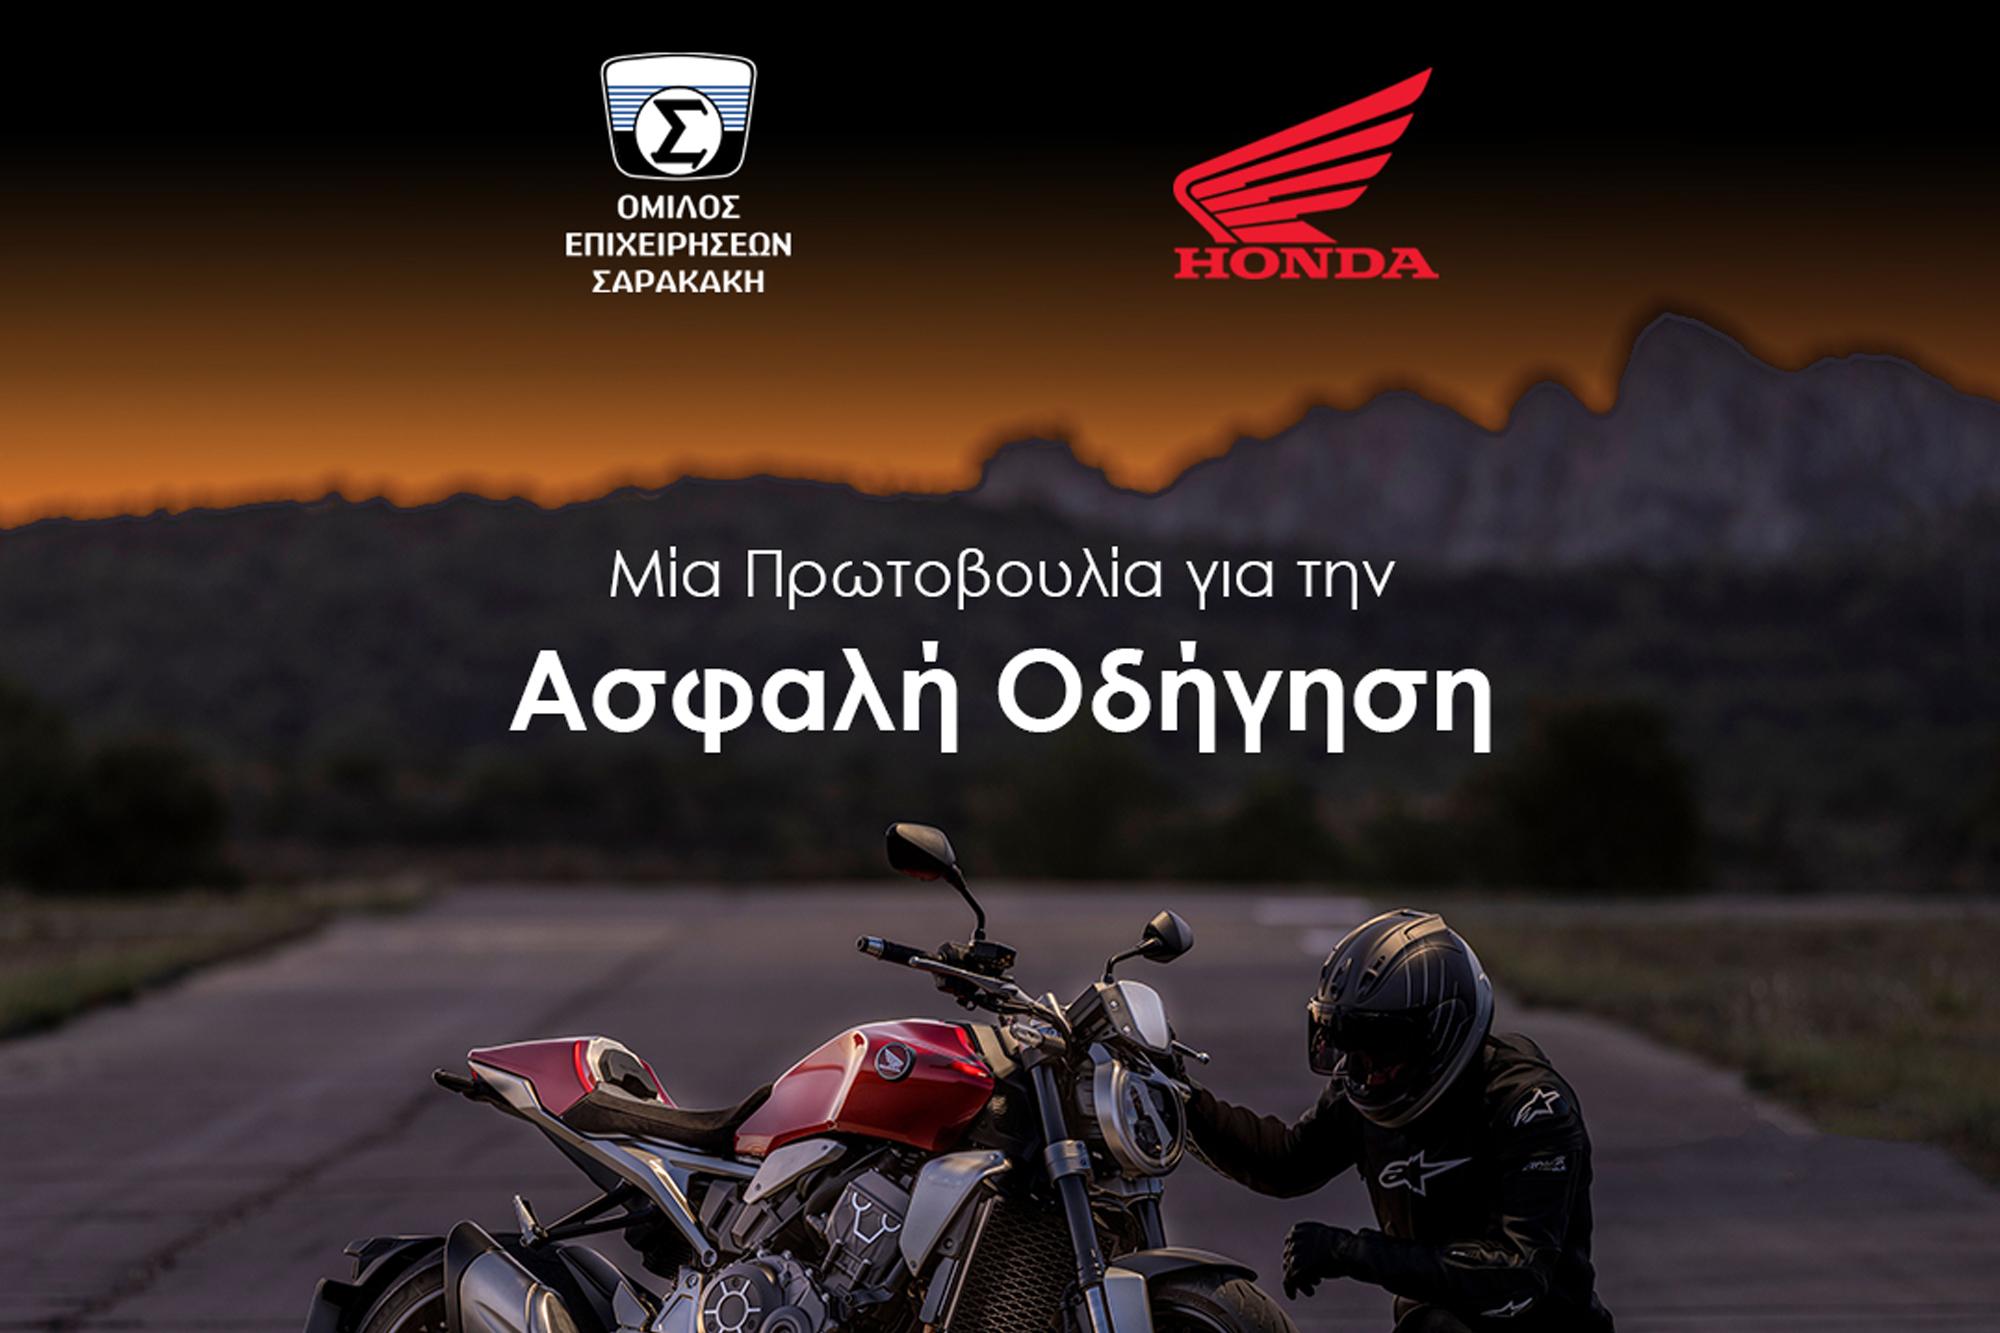 Πρωτοβουλία του Ομίλου Επιχειρήσεων Σαρακακή και της Honda Moto για την Ασφαλή Οδήγηση 